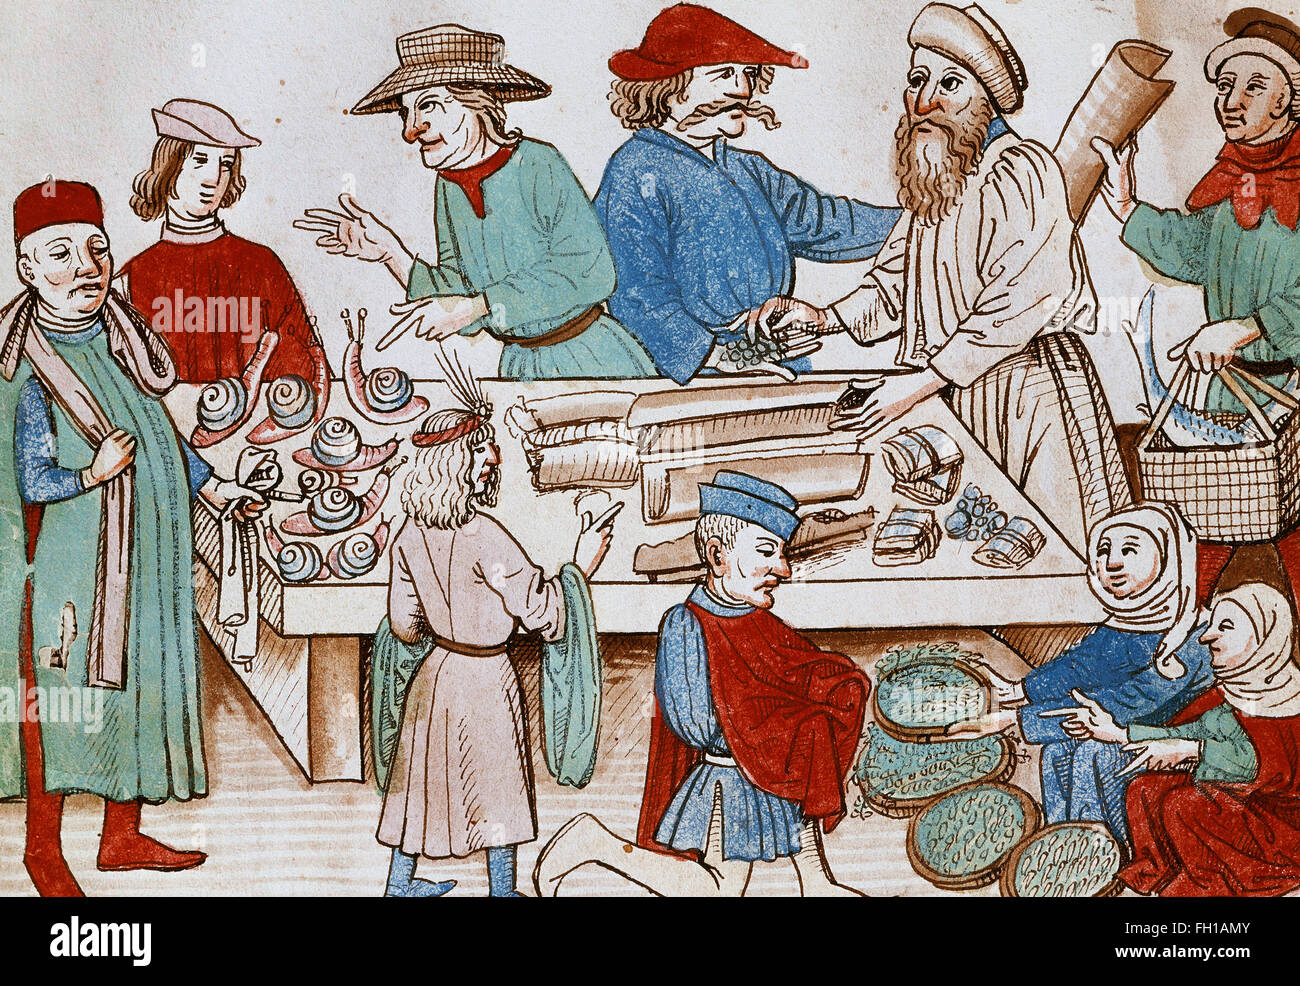 Eine Marktszene. Miniatur aus der Chronik von Ulrich von Richenthal. 1438. Nationalbibliothek, Prag, Tschechische Republik. Stockfoto